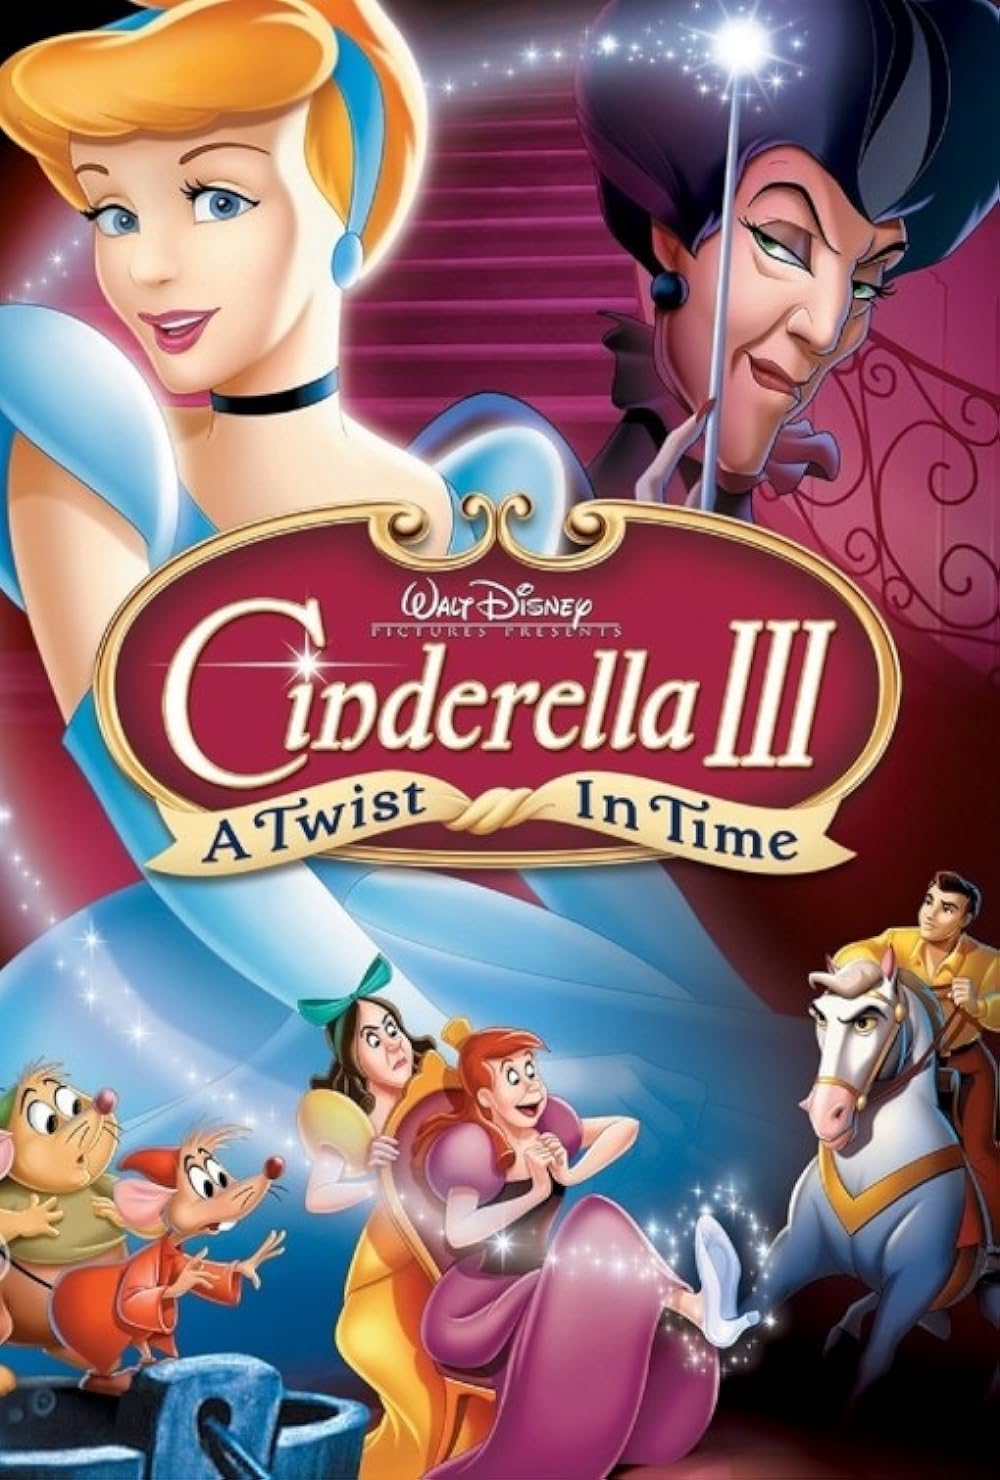 Cinderella III: A Twist in Time (2007) 256Kbps 23.976Fps 48Khz 5.1Ch Disney+ DD+ E-AC3 Turkish Audio TAC